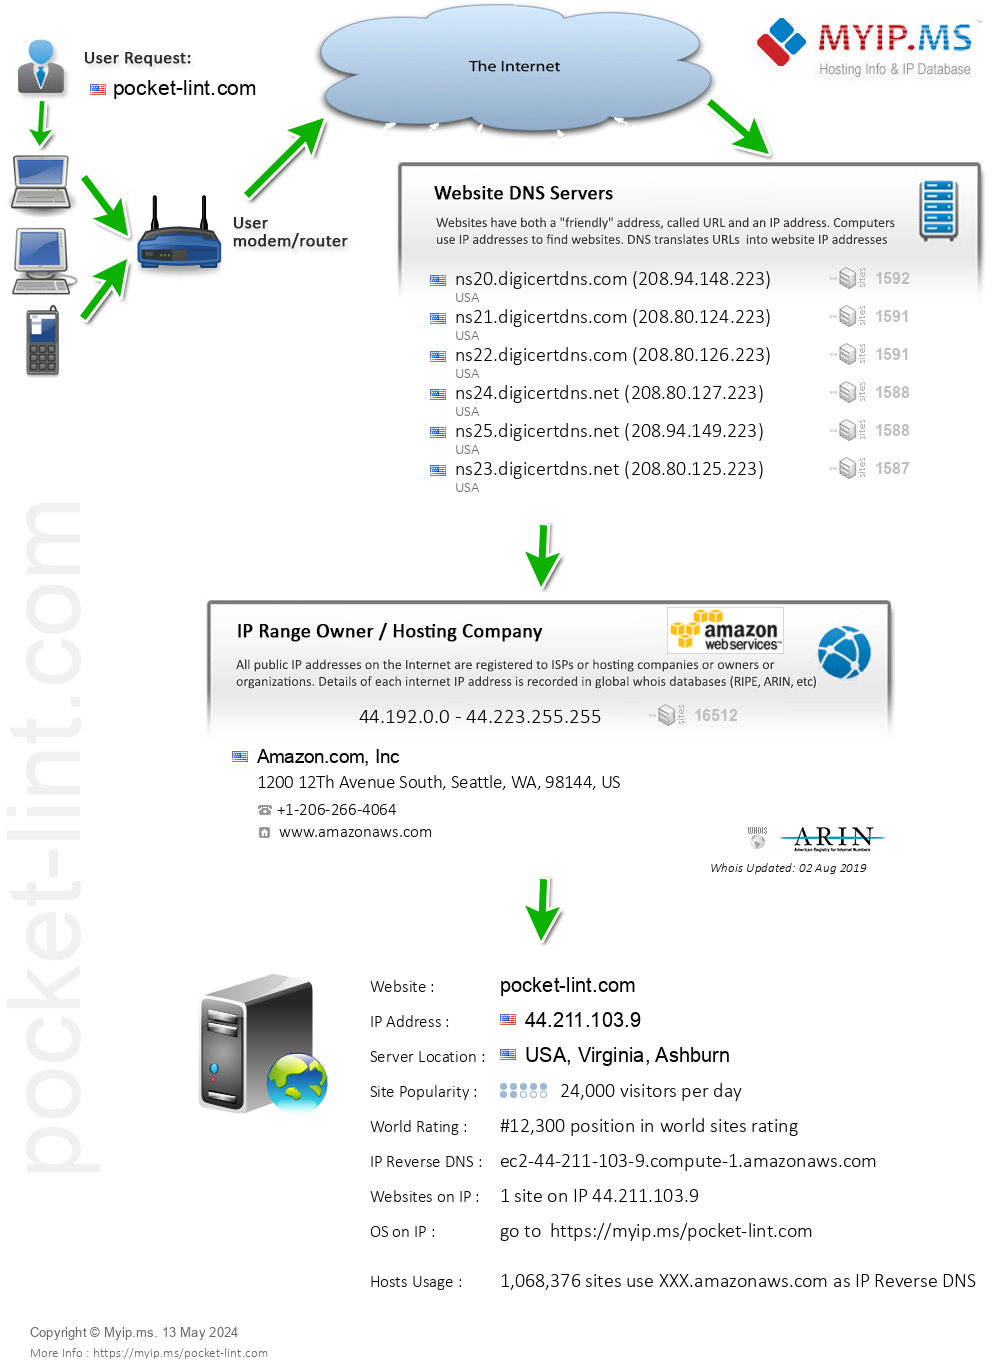 Pocket-lint.com - Website Hosting Visual IP Diagram